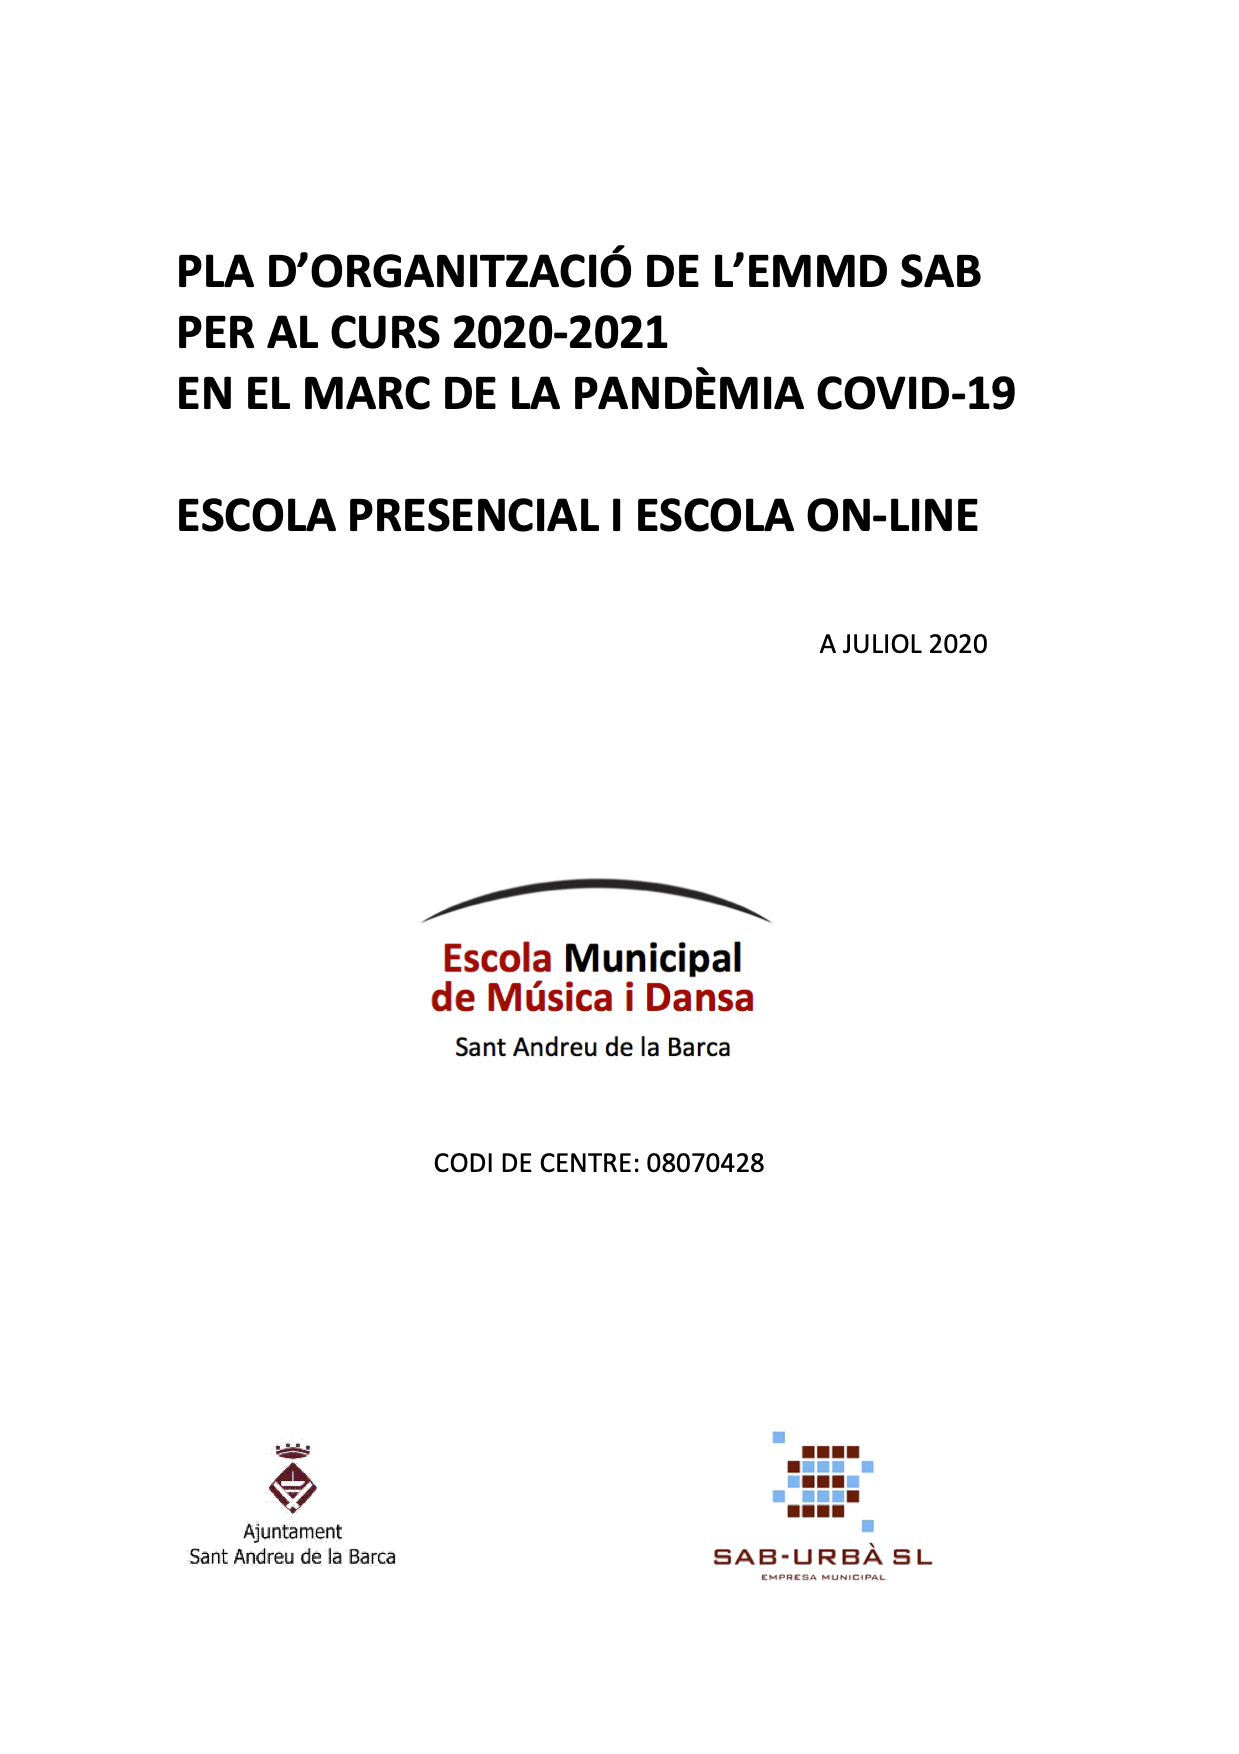 PLA D'ORGANITZACIÓ DE L'ESCOLA PER AL CURS 2020-2021 EN EL MARC DE LA PANDÈMIA COVID-19.  